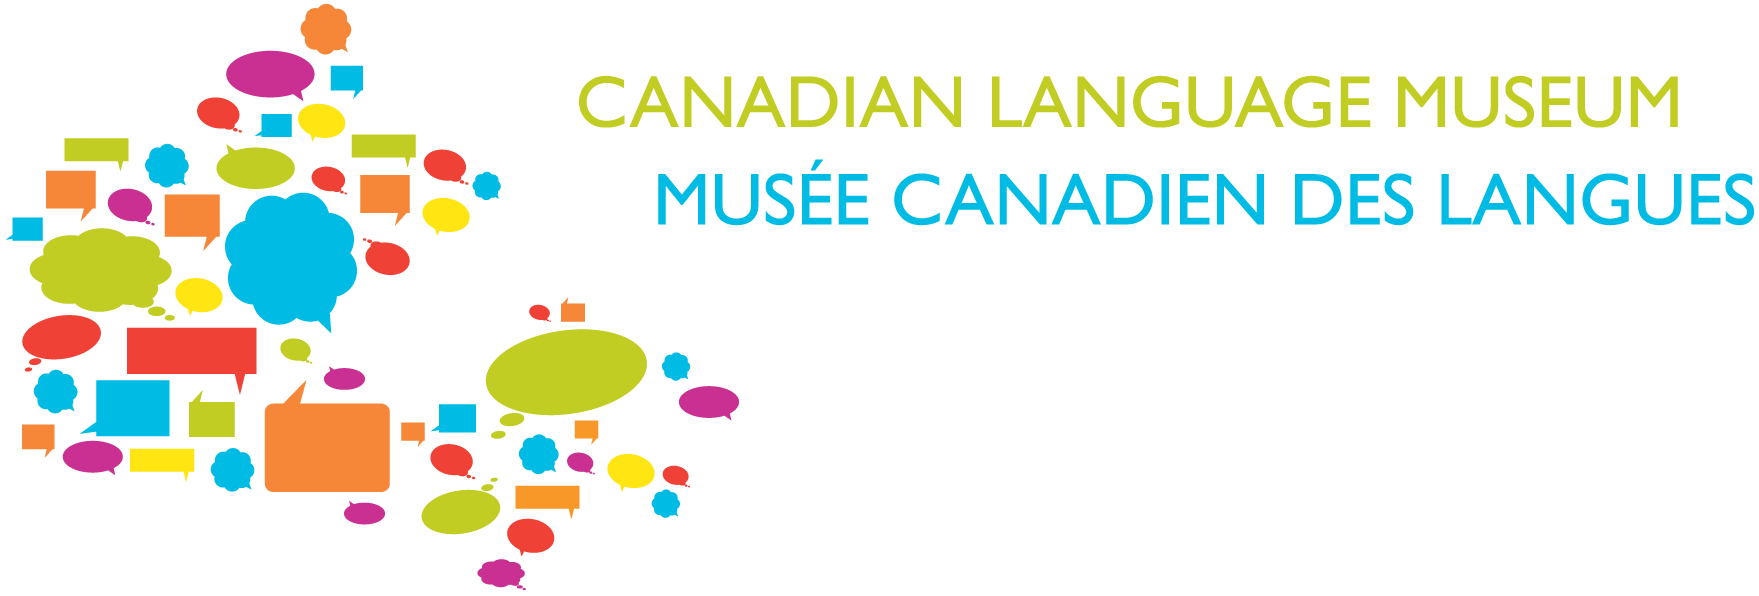 Canadian Language Museum